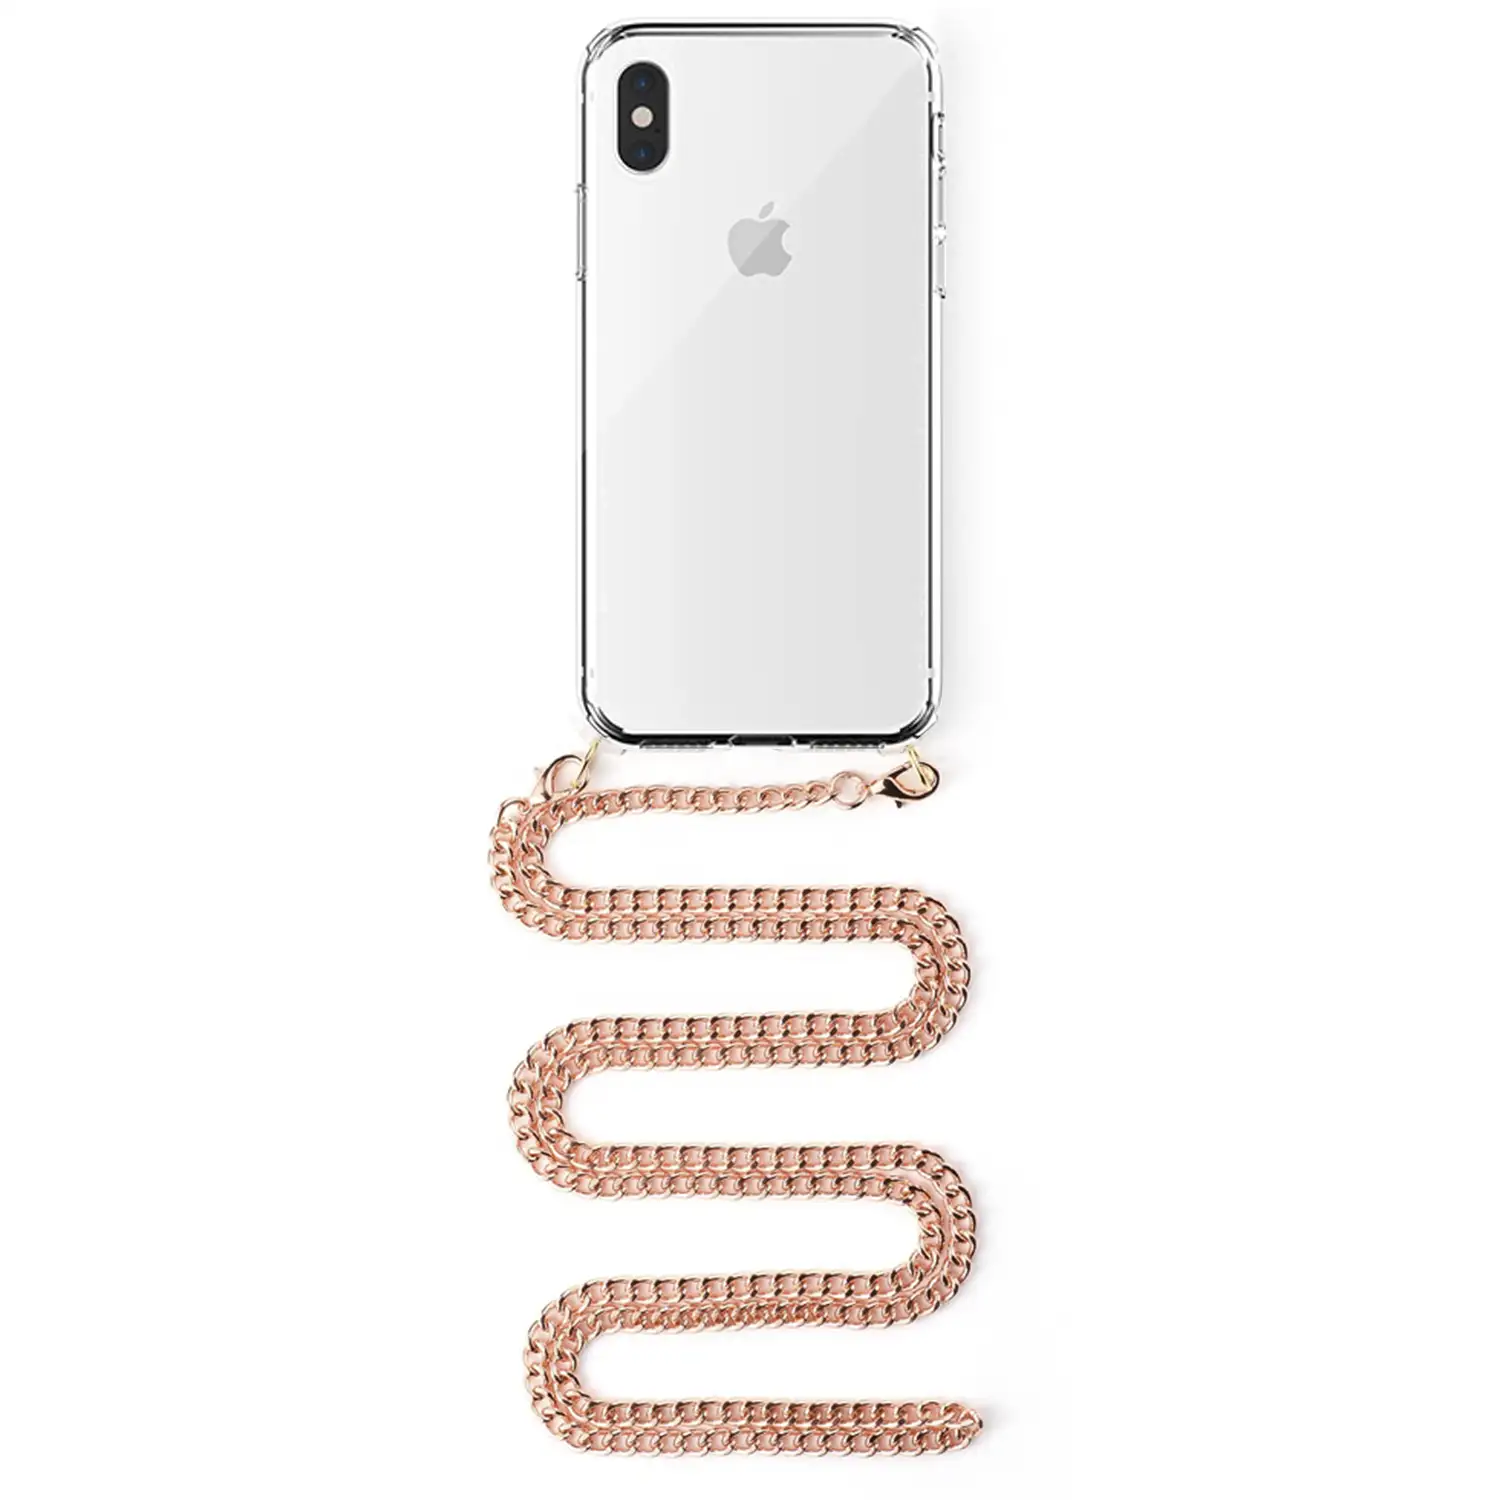 Carcasa transparente iPhone XS Max con colgante cadena metálica. Accesorio  de moda, ajuste perfecto y máxima